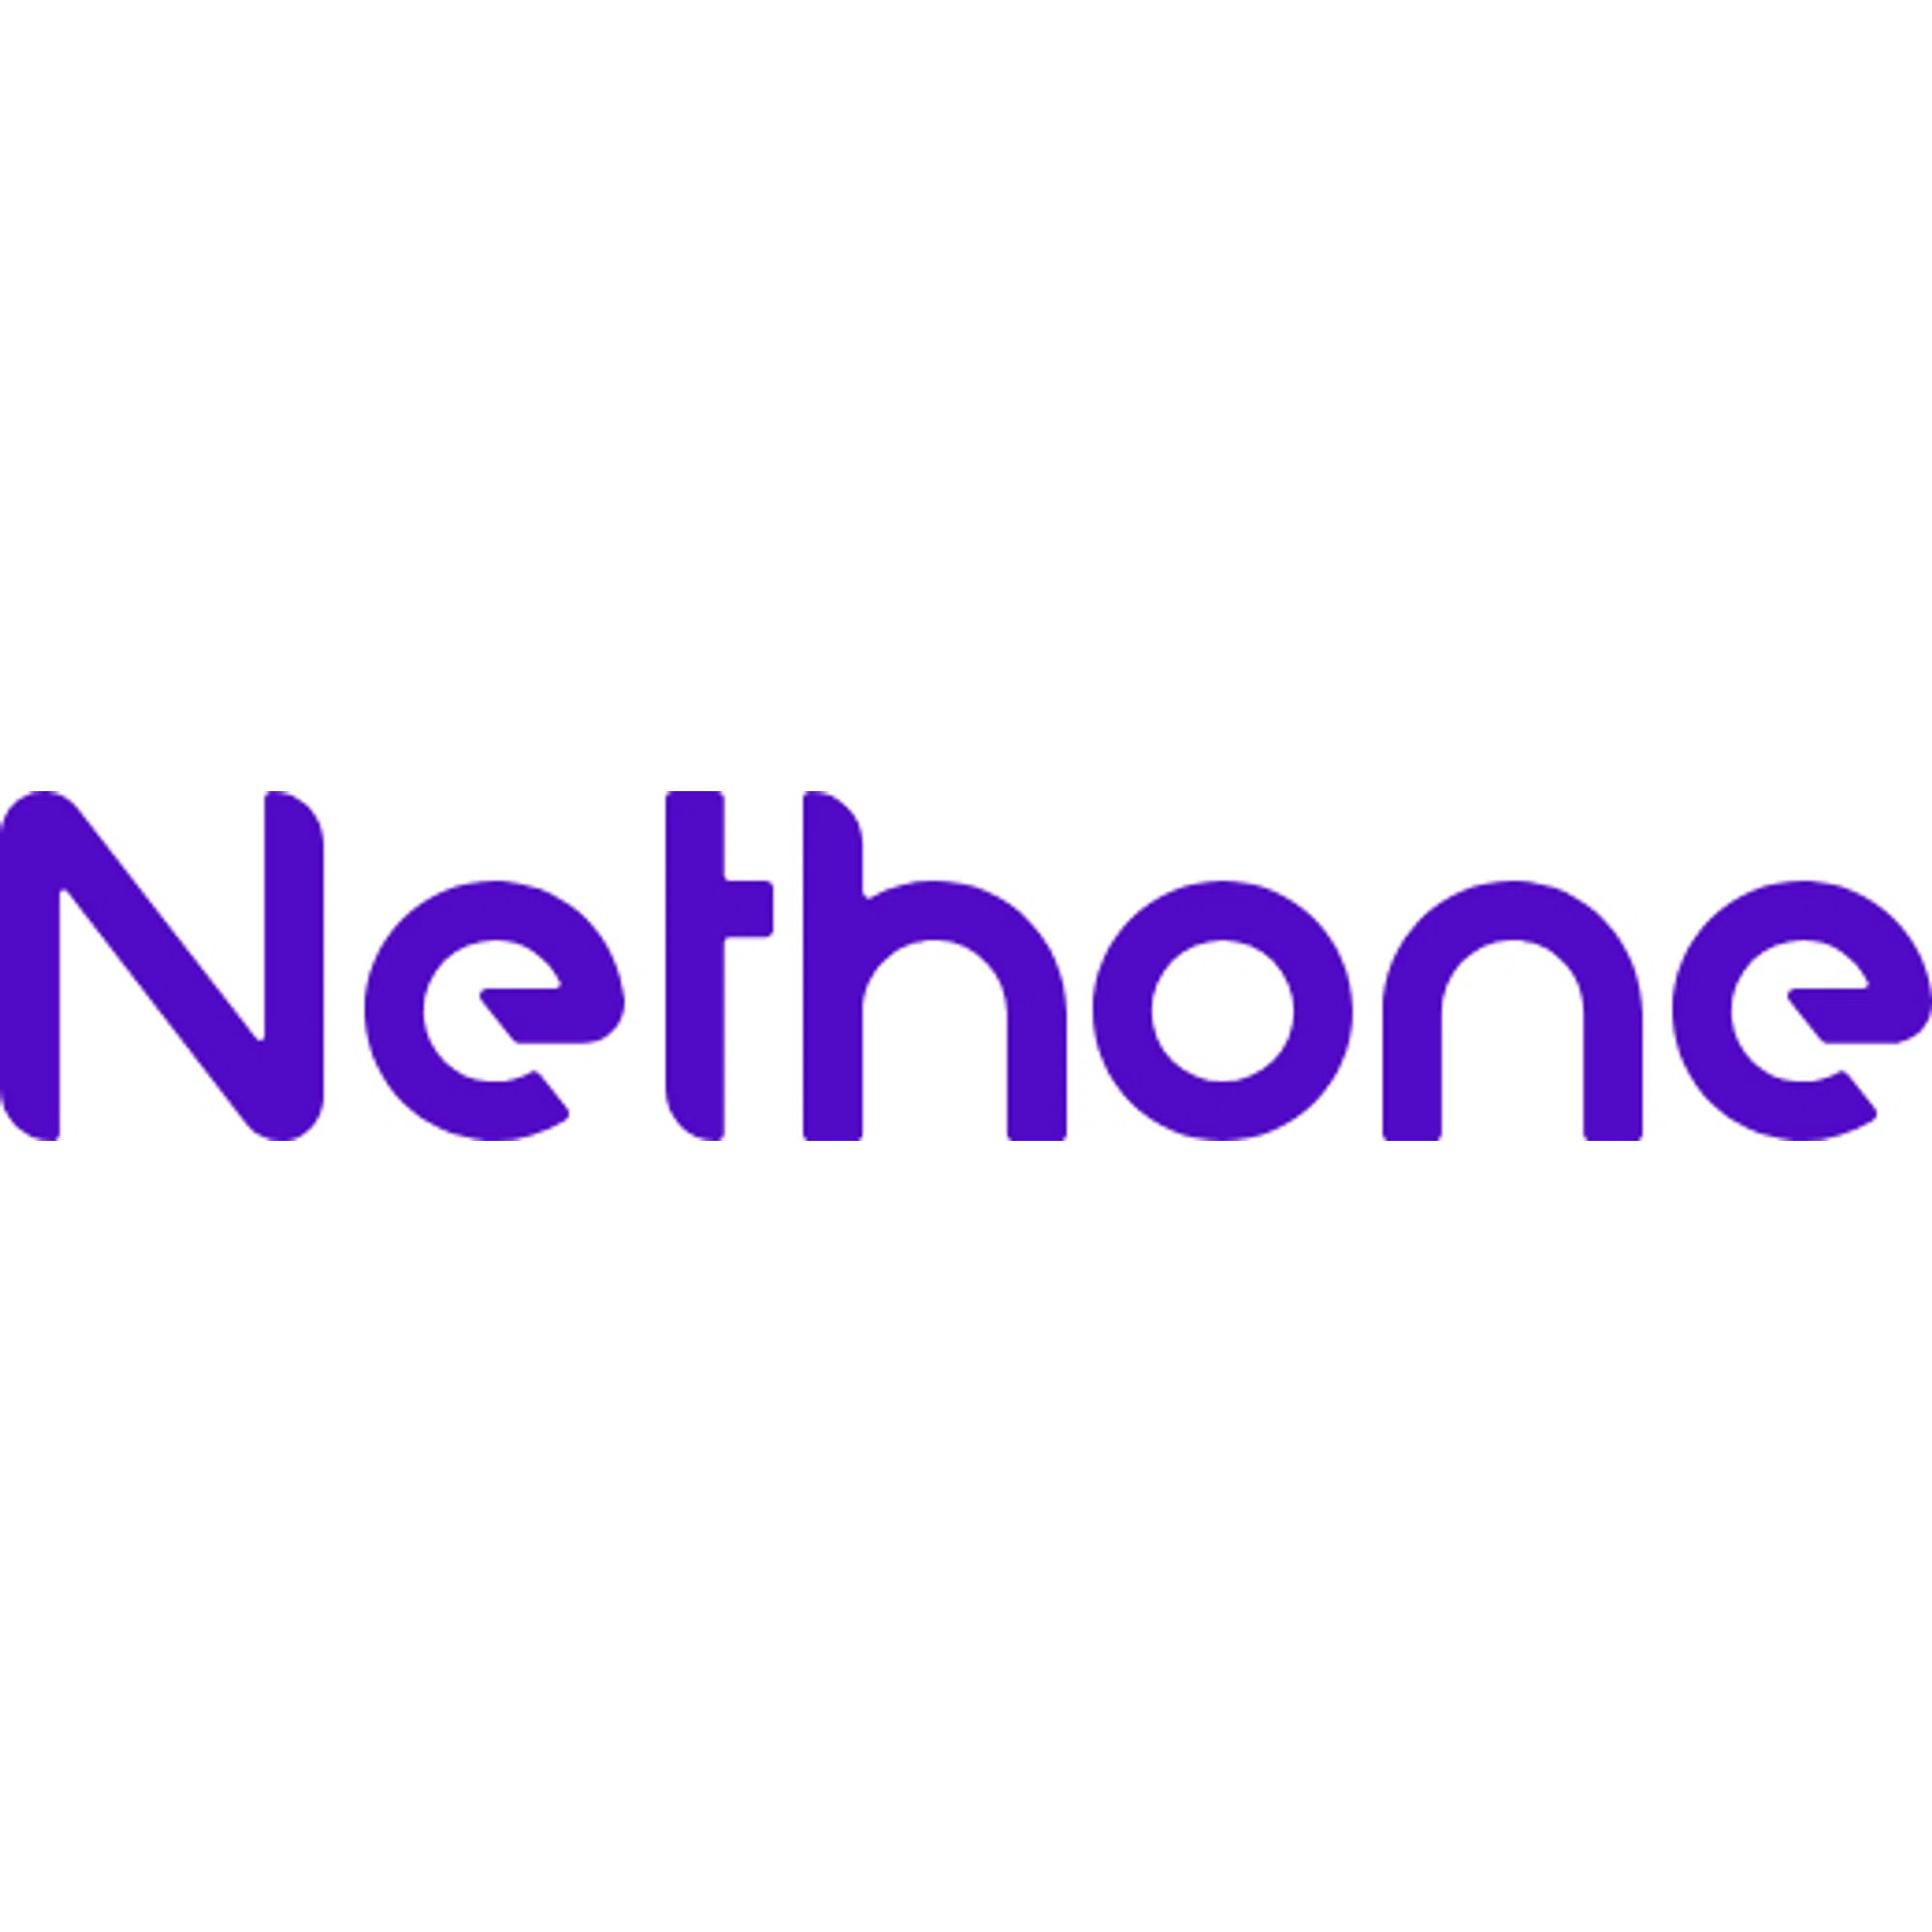 Nethone